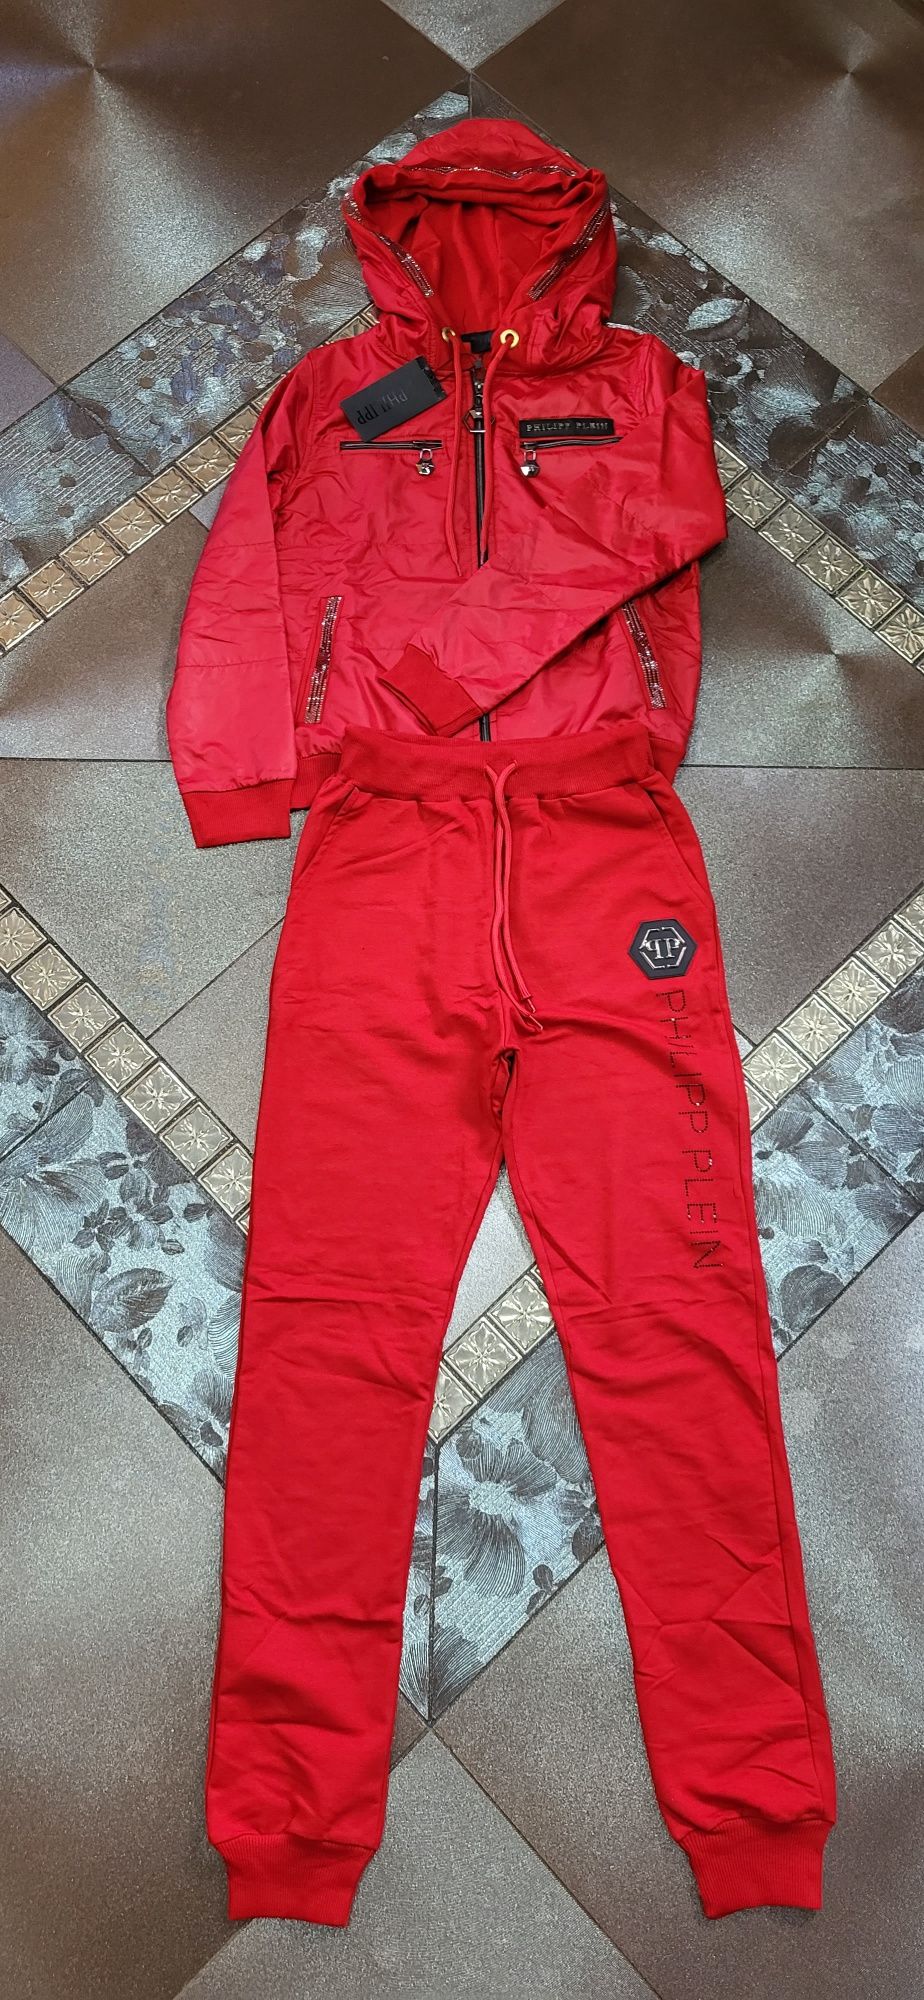 PP czerwony dres damski premium bomberka spodnie zasuwny kaptur S